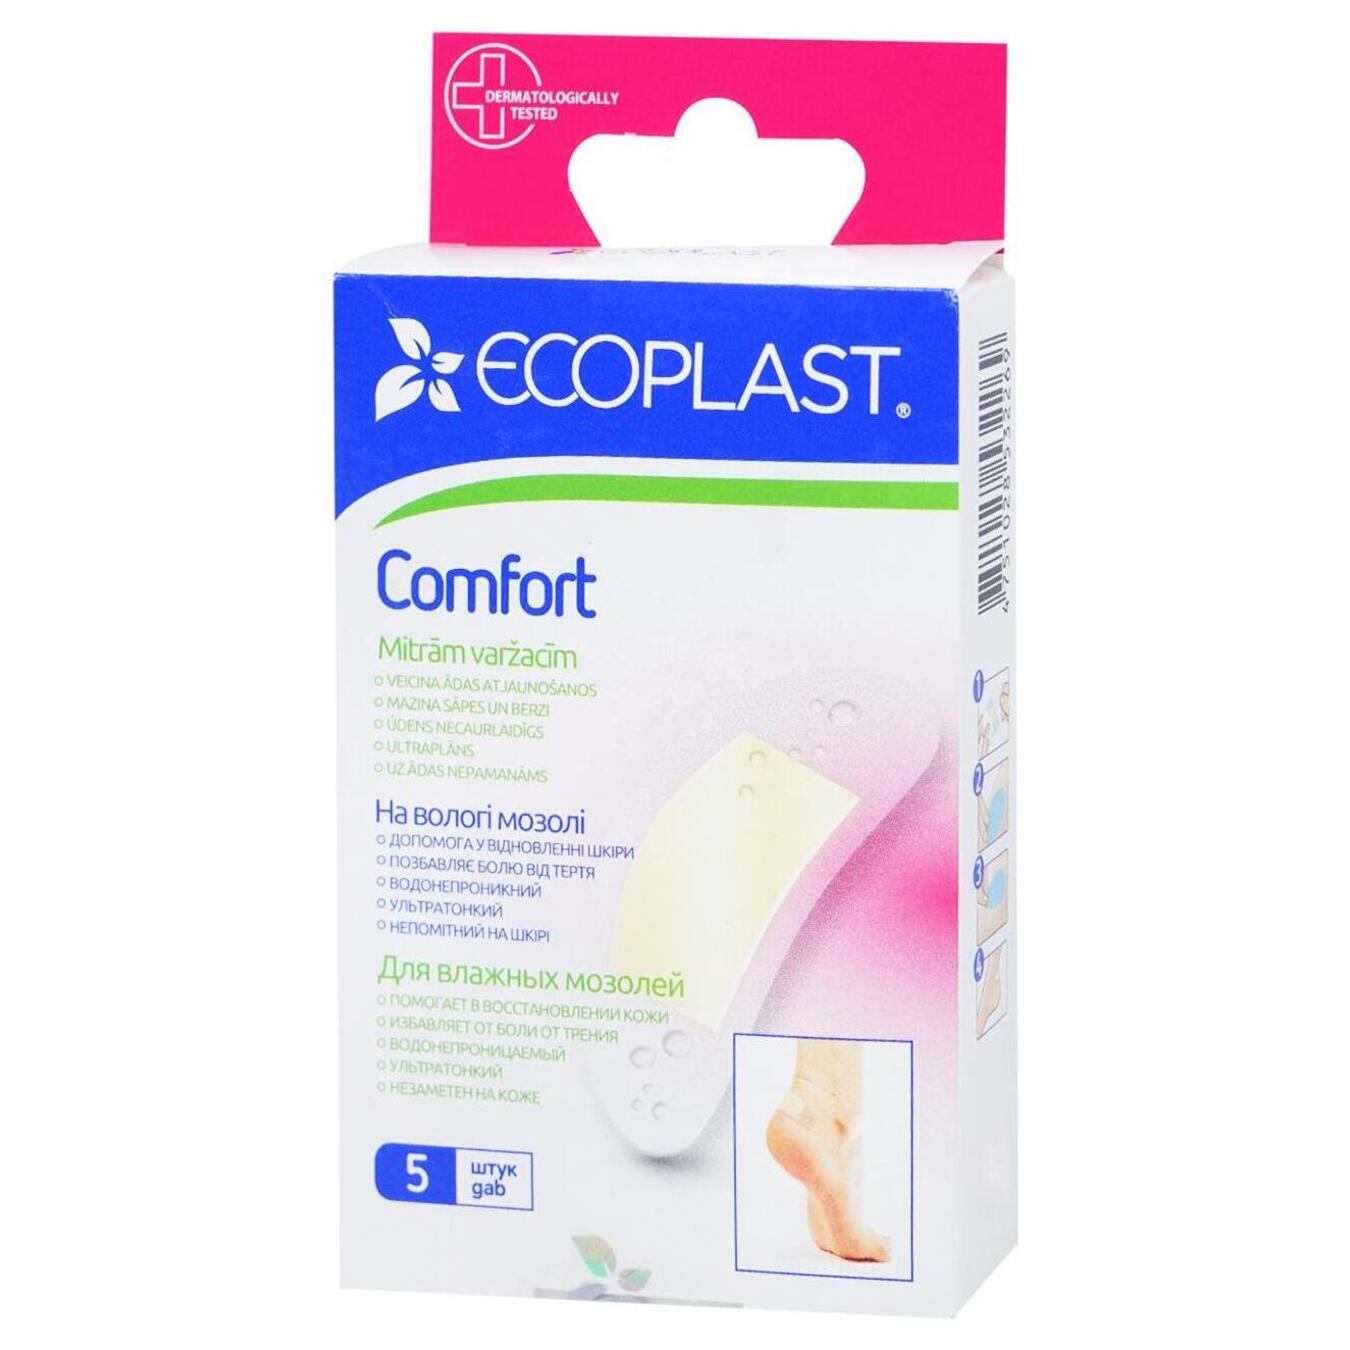 Пластырь медицинский Ecoplast на влажные мозоли комфорт 5шт.